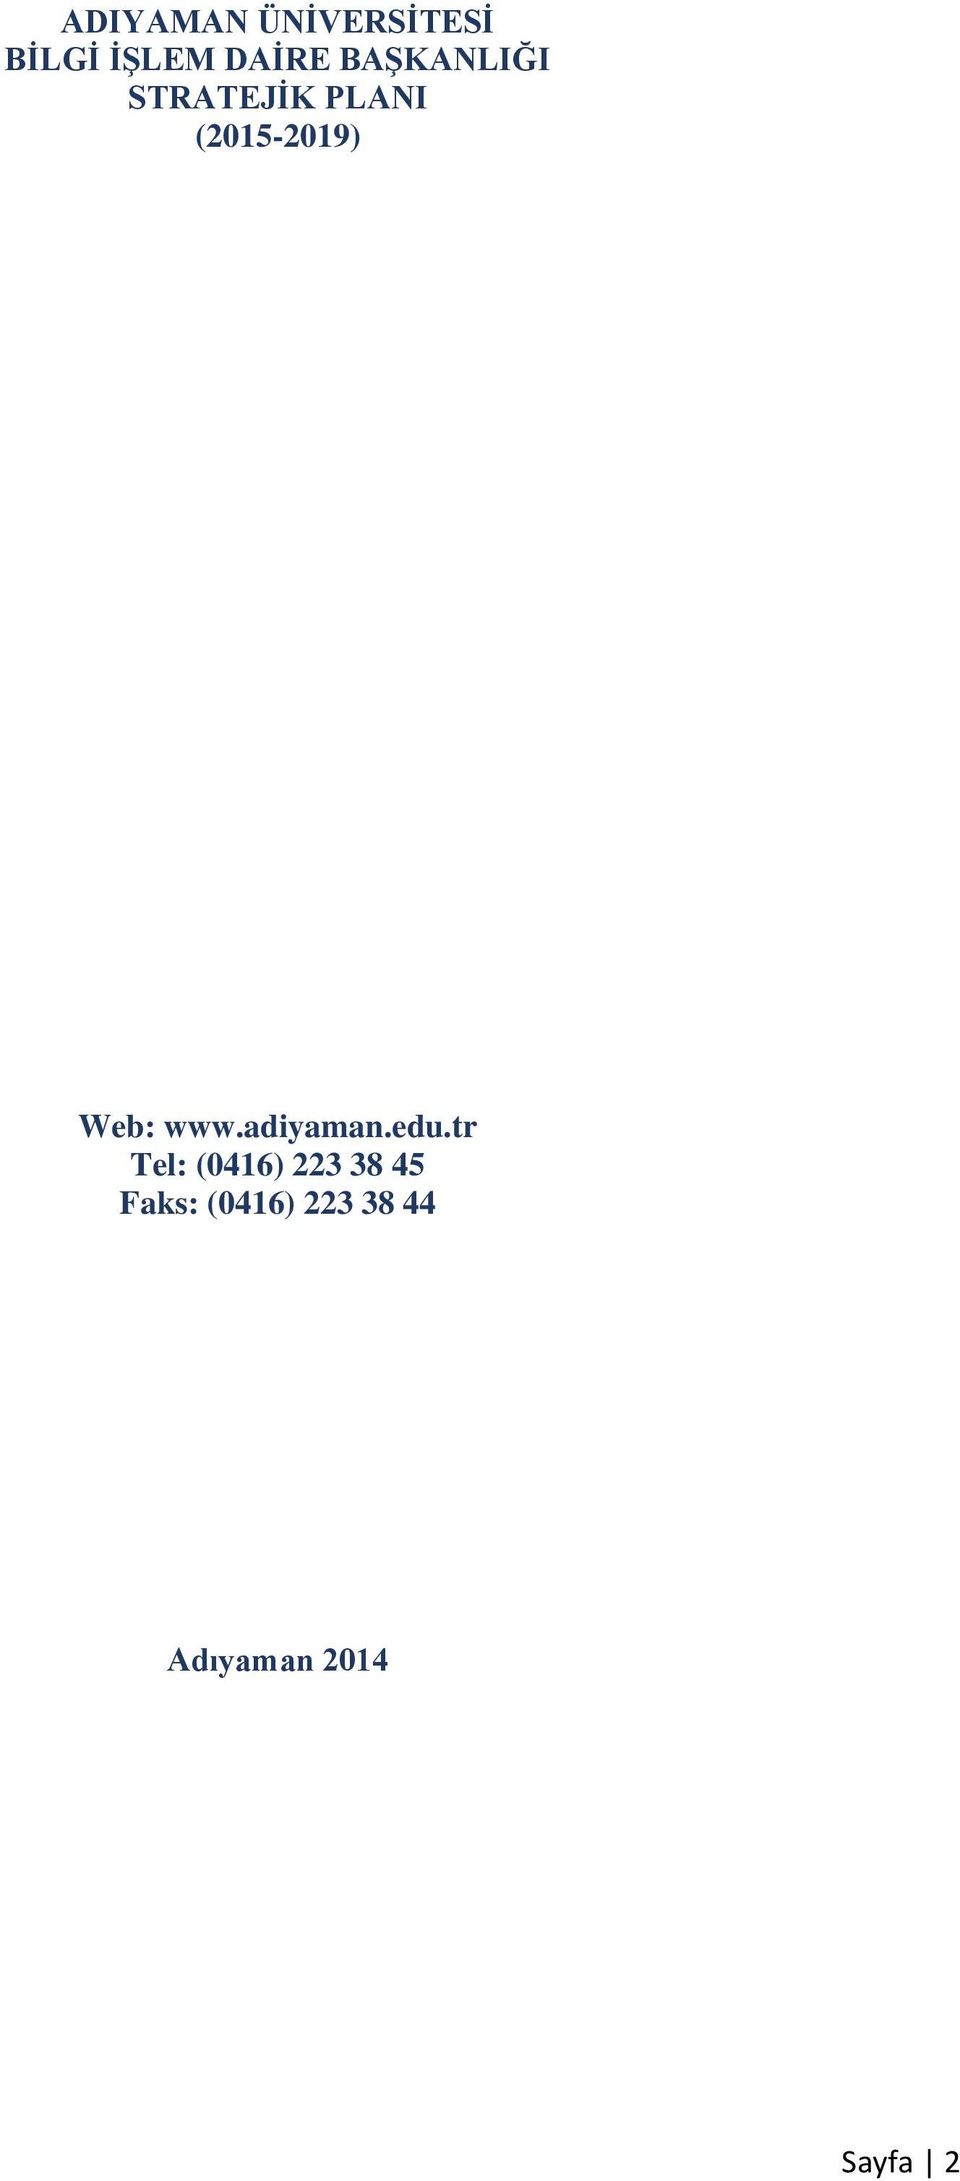 Web: www.adiyaman.edu.